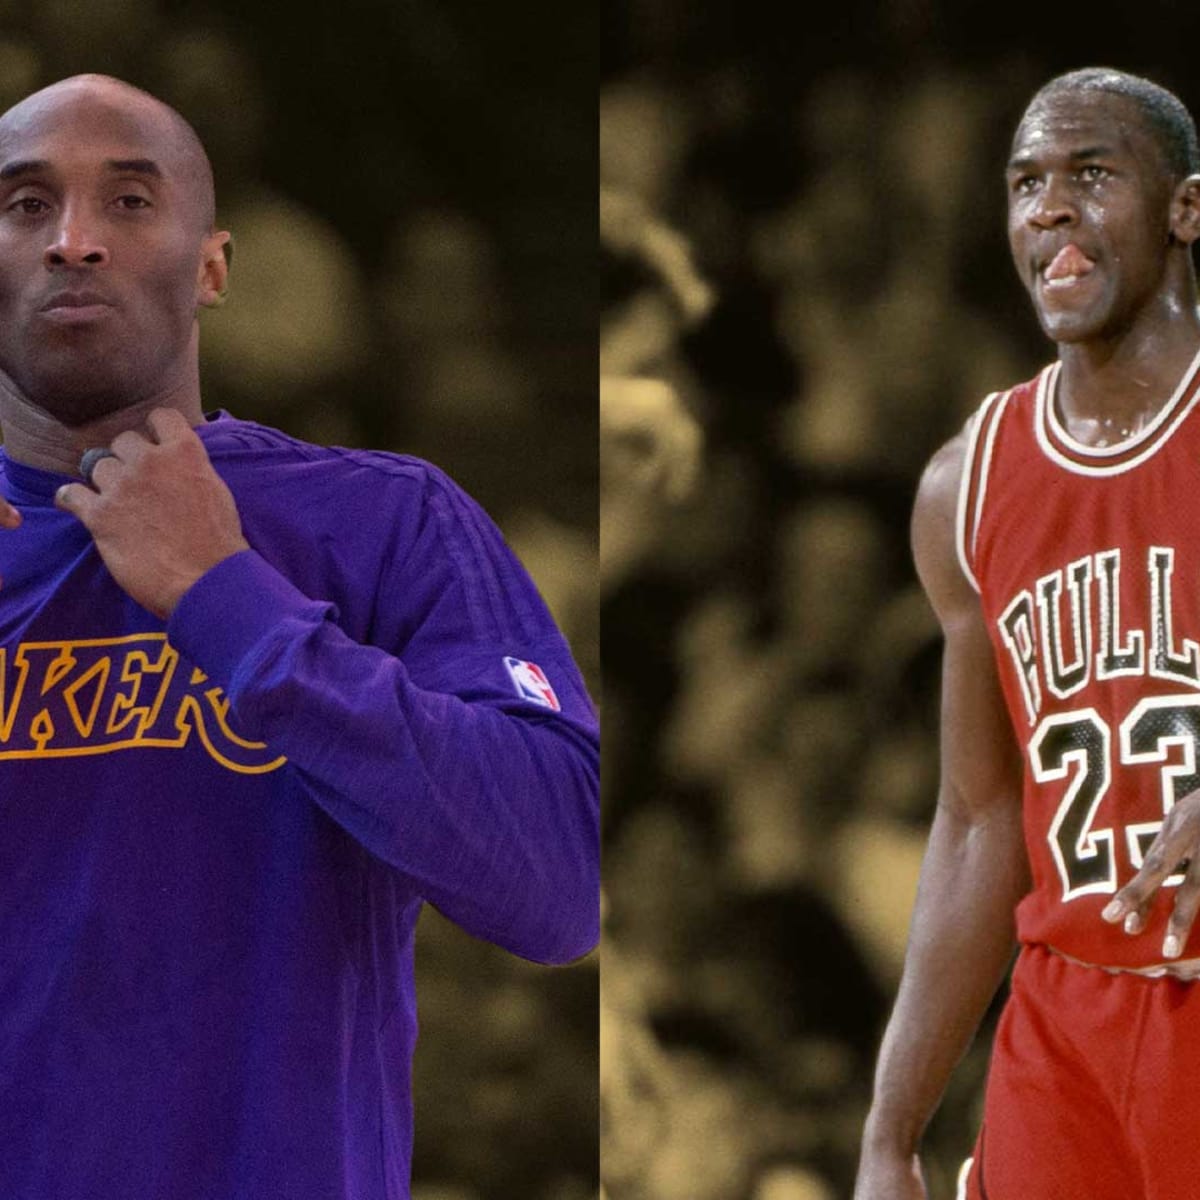 Michael Jordan vs Kobe Bryant: Duel of Icons 